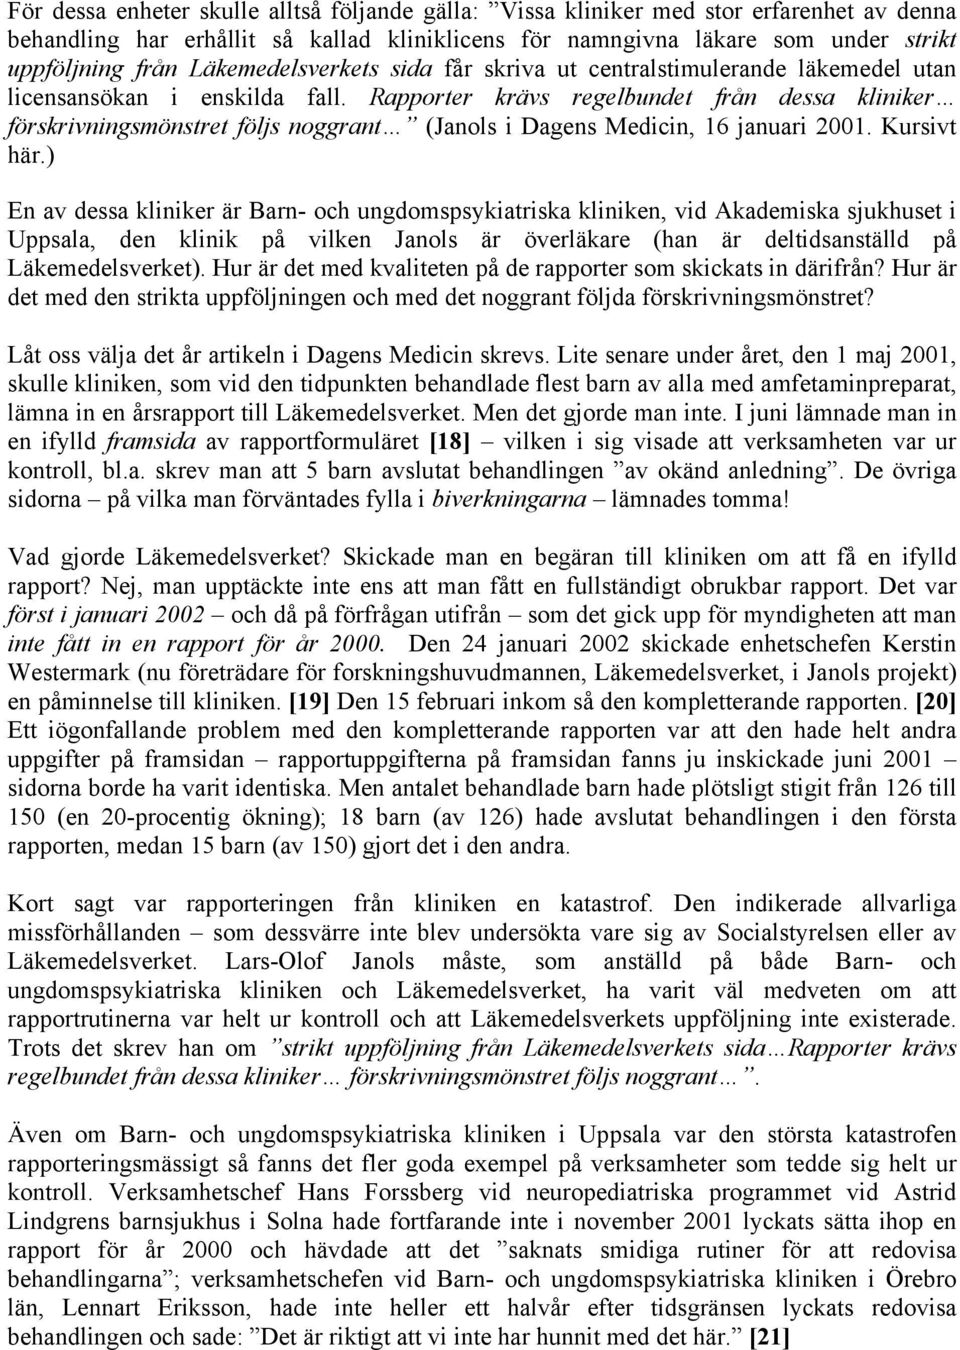 Rapporter krävs regelbundet från dessa kliniker förskrivningsmönstret följs noggrant (Janols i Dagens Medicin, 16 januari 2001. Kursivt här.